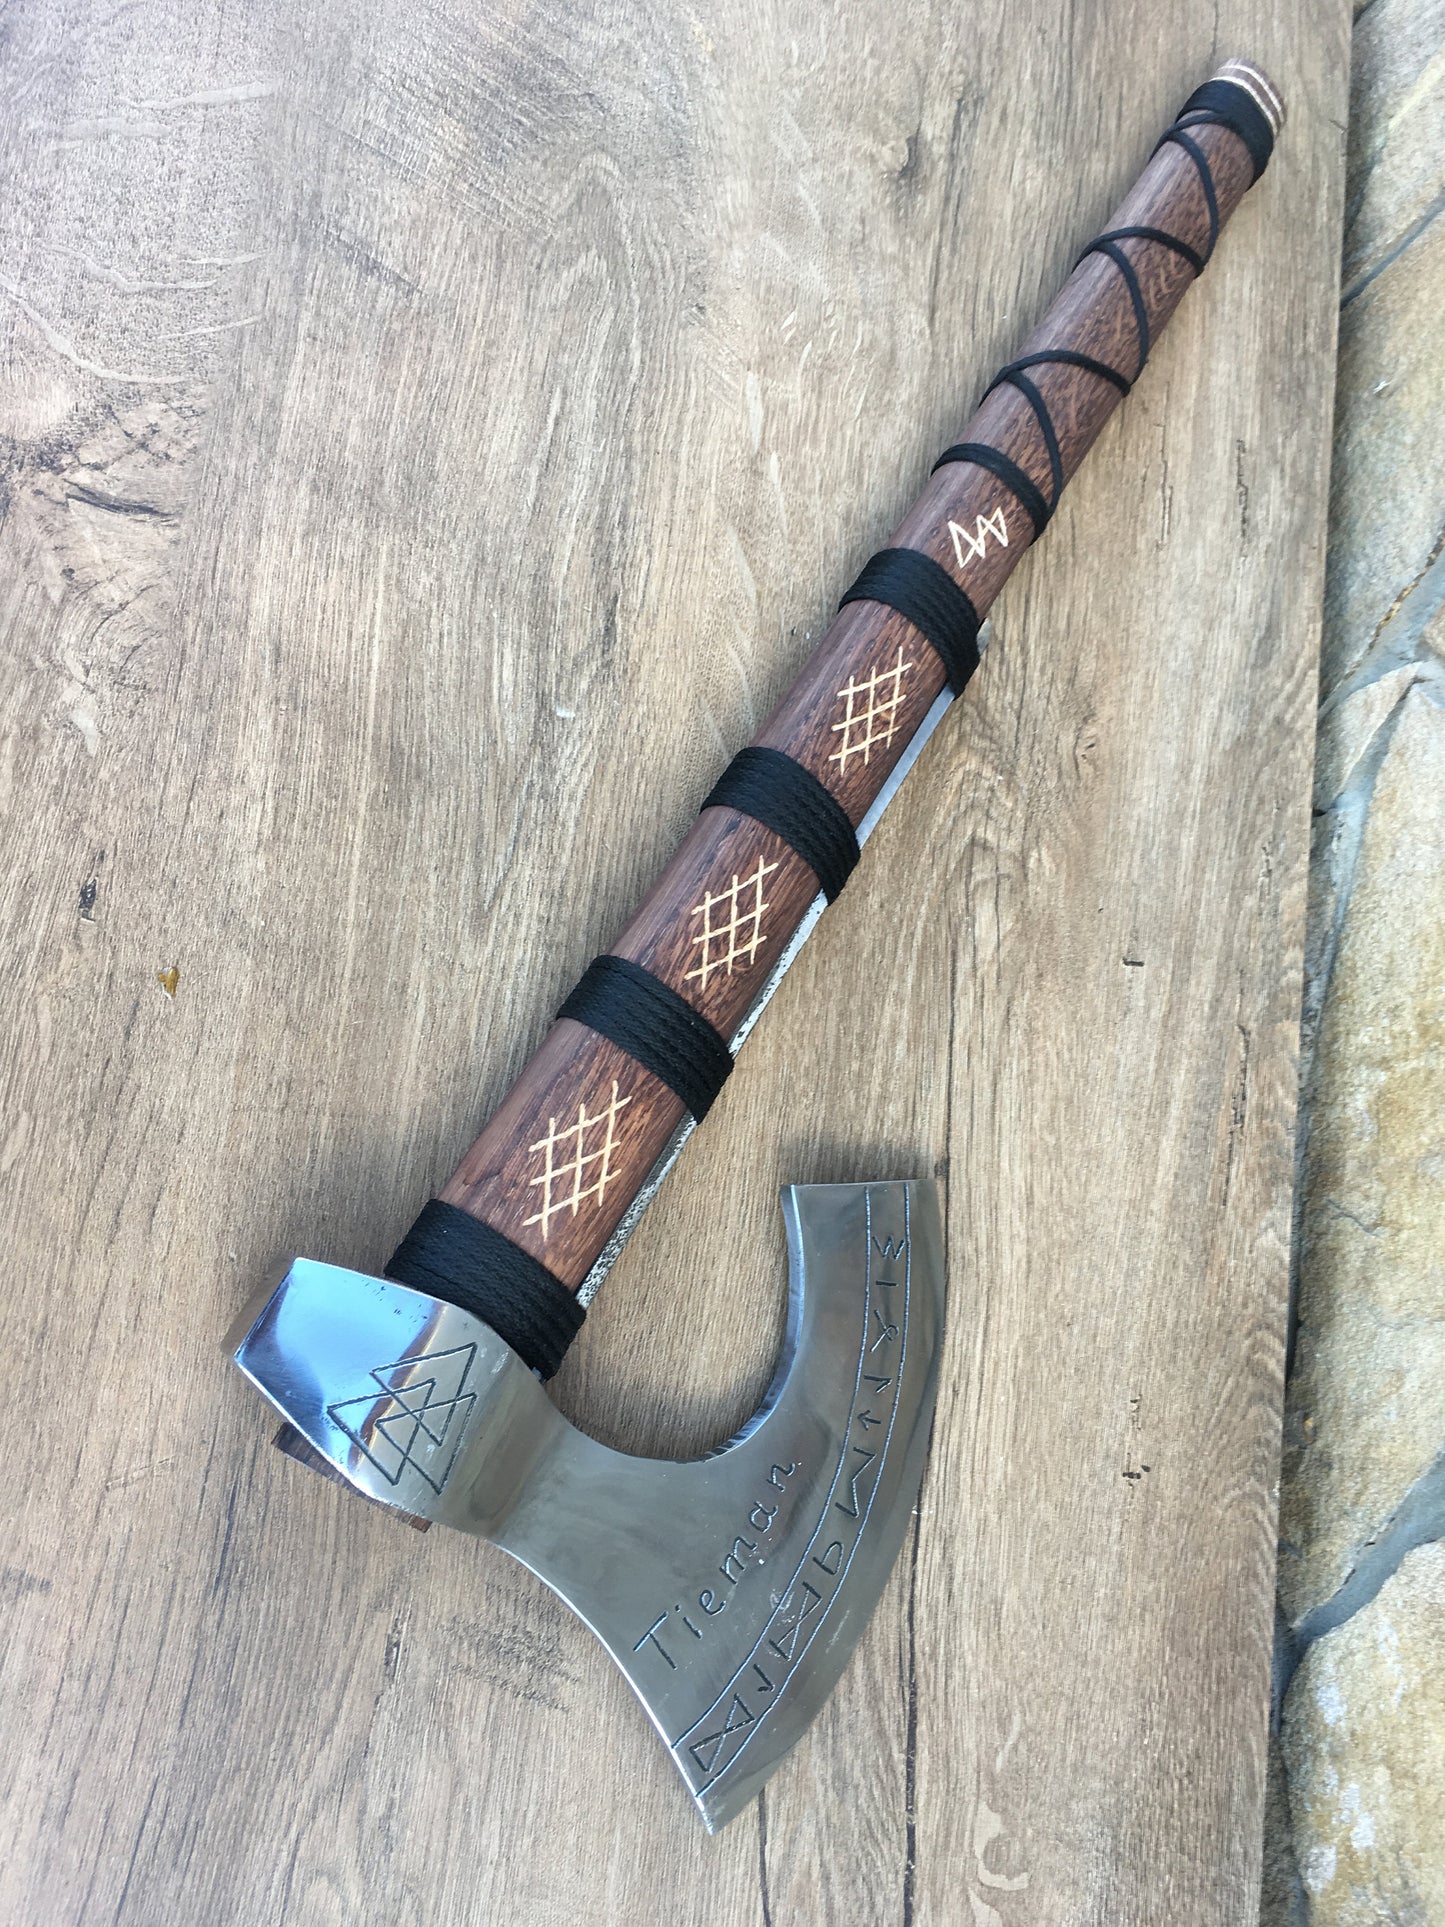 Runic axe, pagan axe, axe with runes, personalized axe, custom axe, axe with initials, viking axe, bearded axe, Norse axe, viking weapon